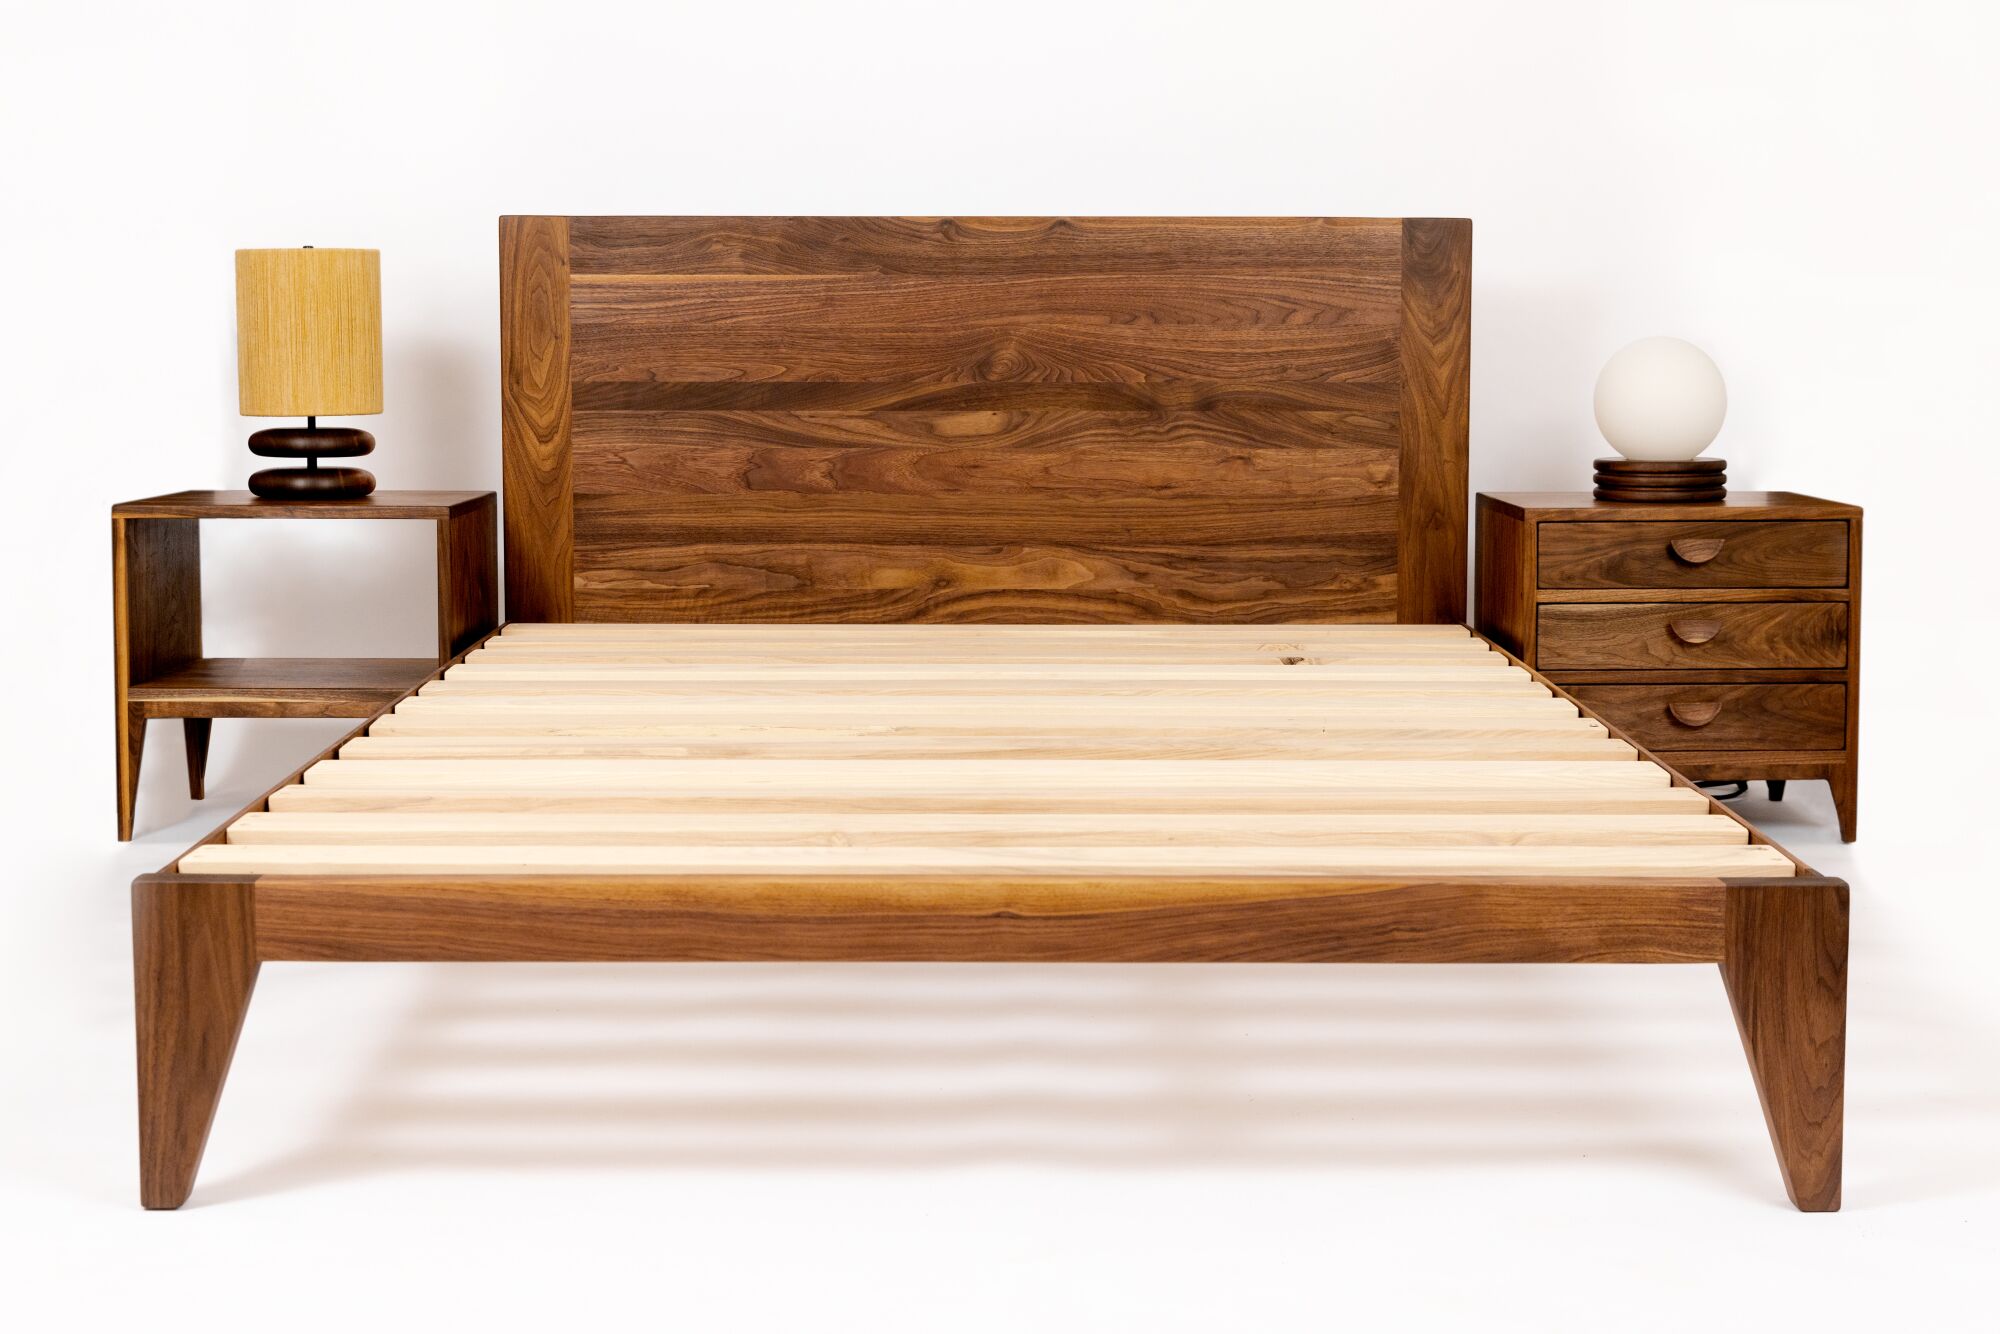 Деревянная кровать, столы и лампы